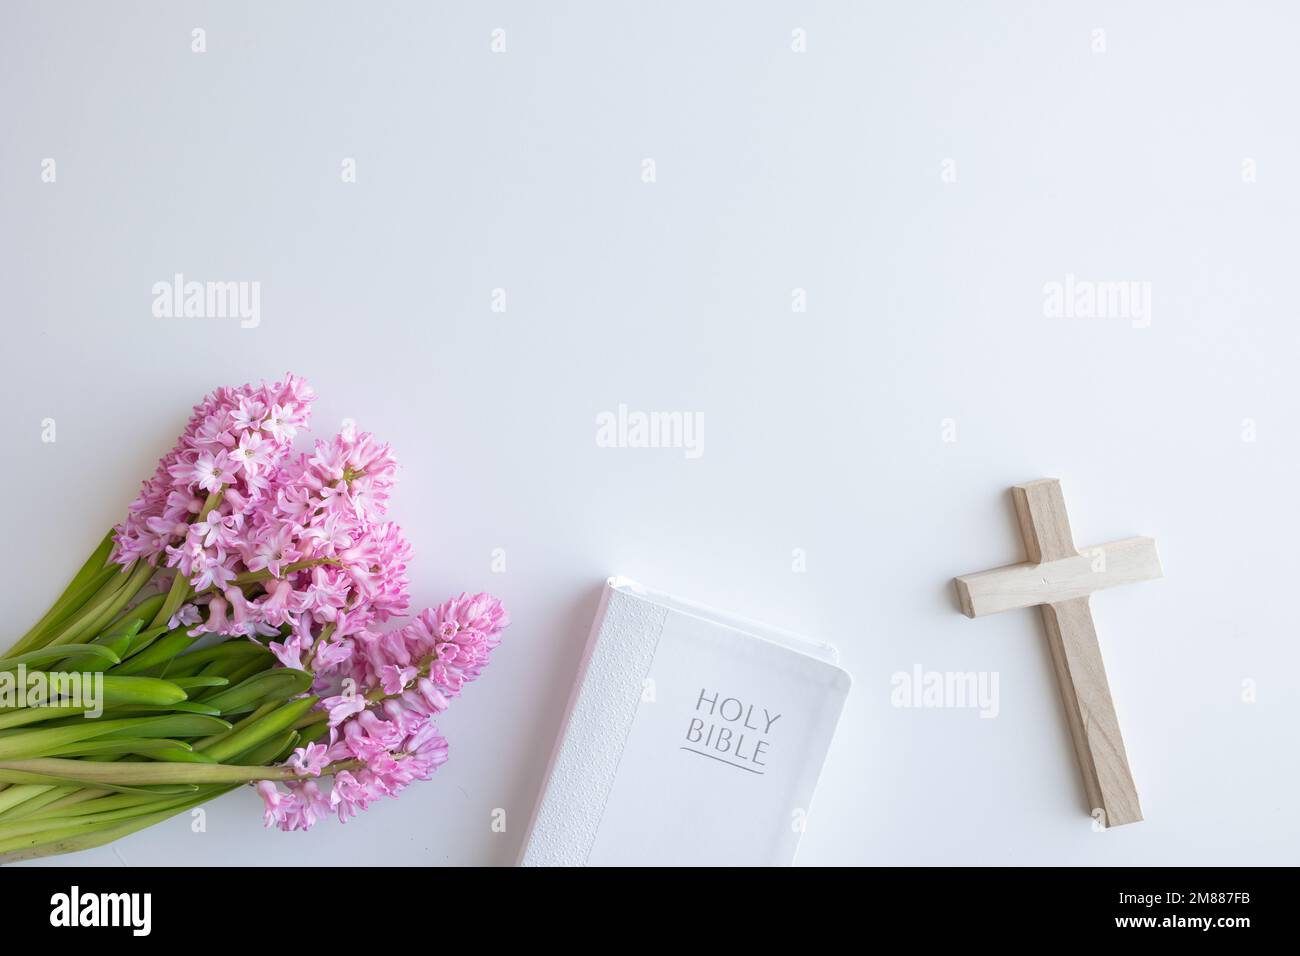 Bordure de la Bible chrétienne blanche, petite croix de bois et bouquet de fleurs de jacinthe rose sur fond blanc avec espace de copie Banque D'Images